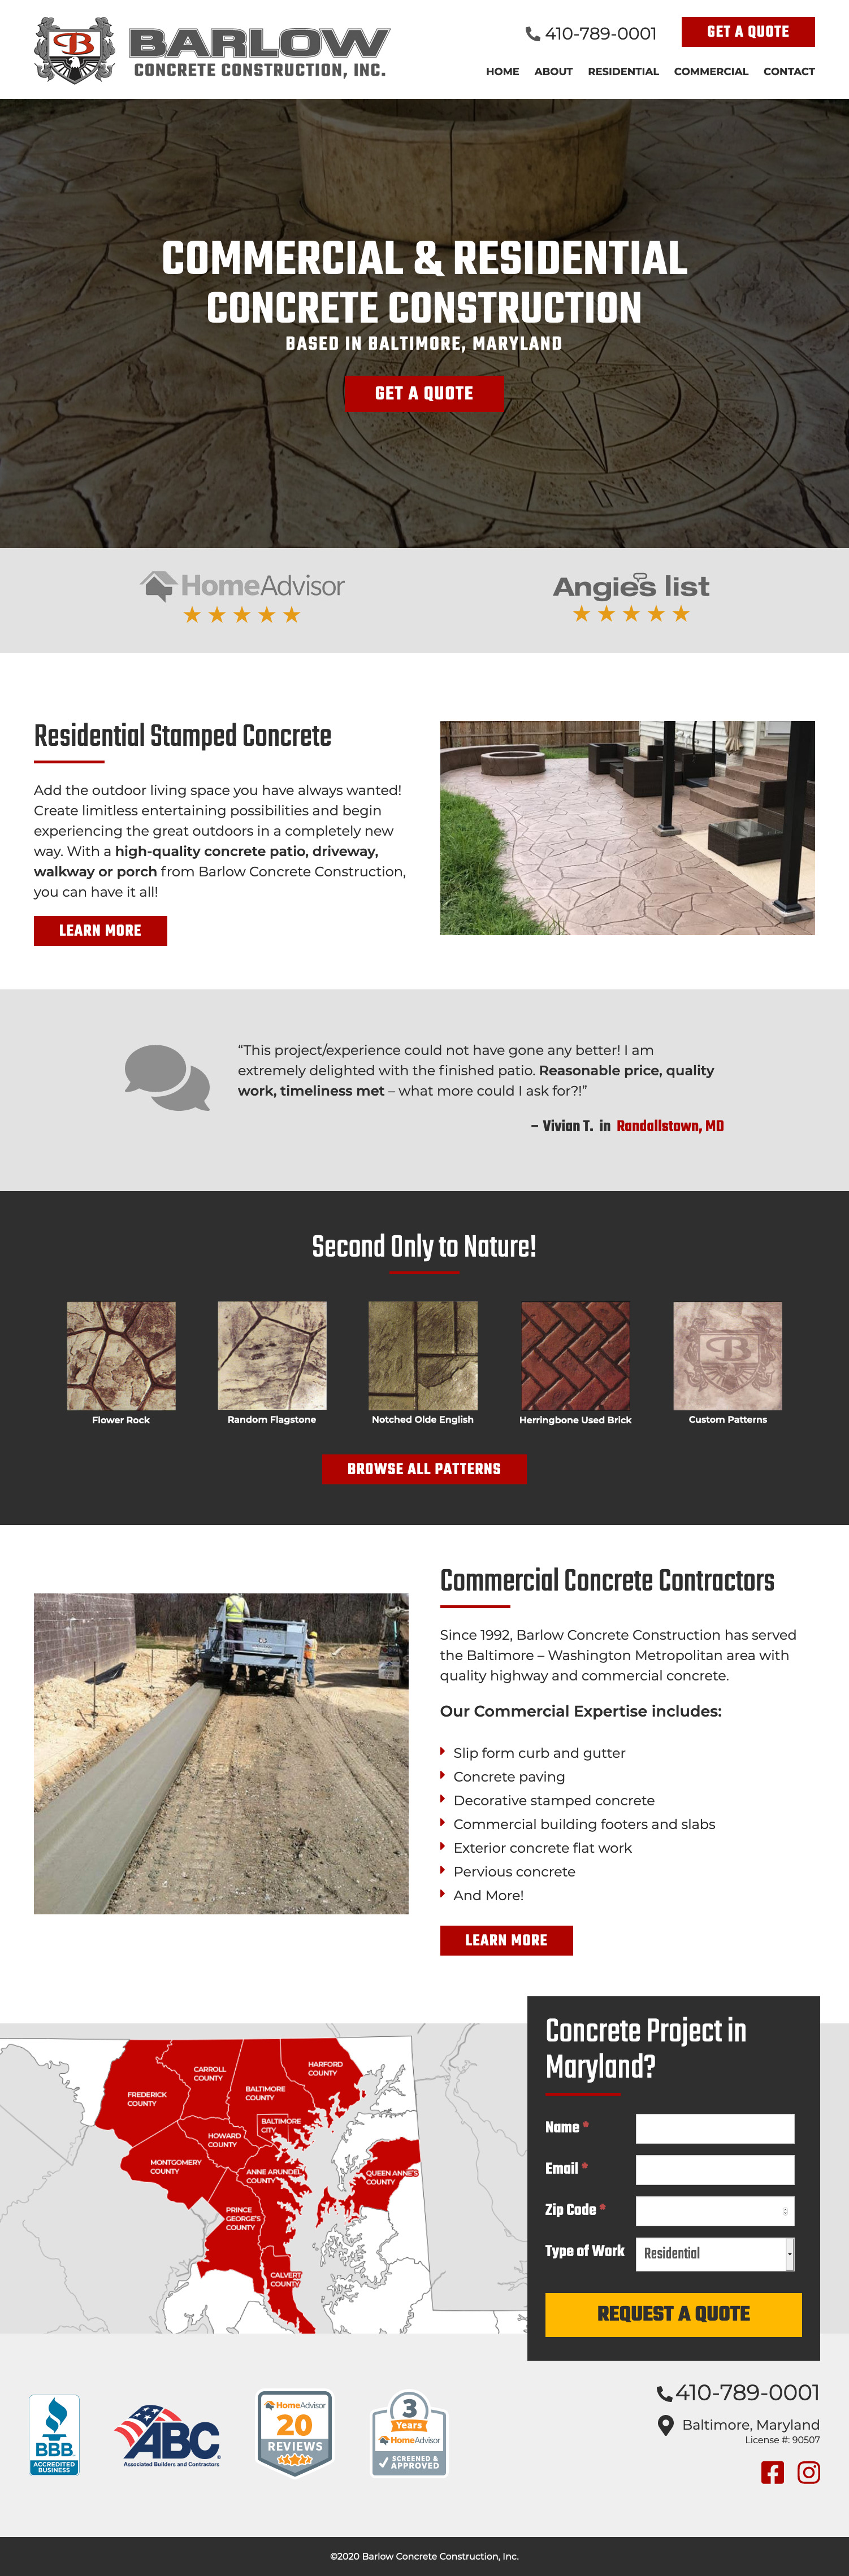 Website Design Comp for Barlow Concrete Construction, Inc.